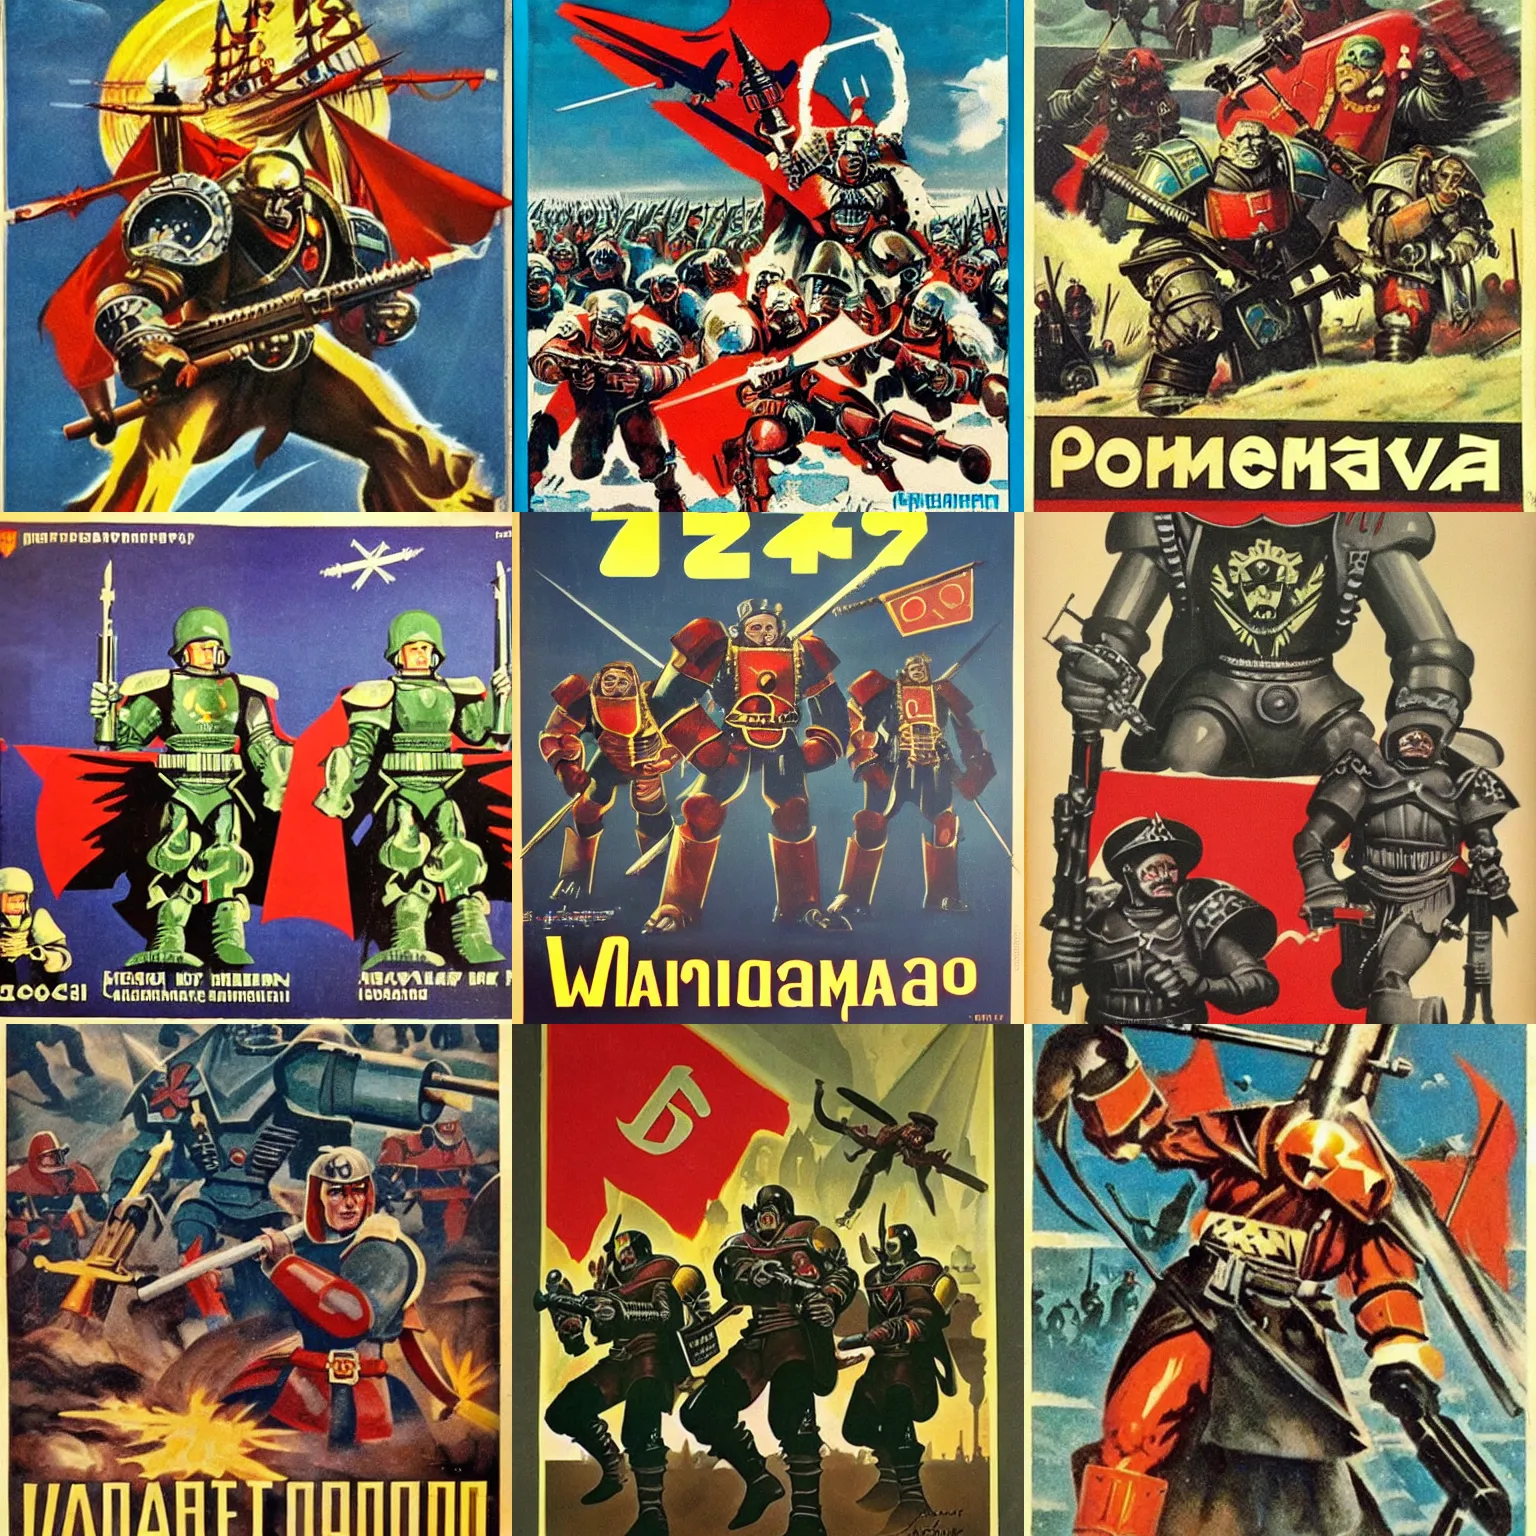 Prompt: warhammer, 1 9 6 0 s soviet poster